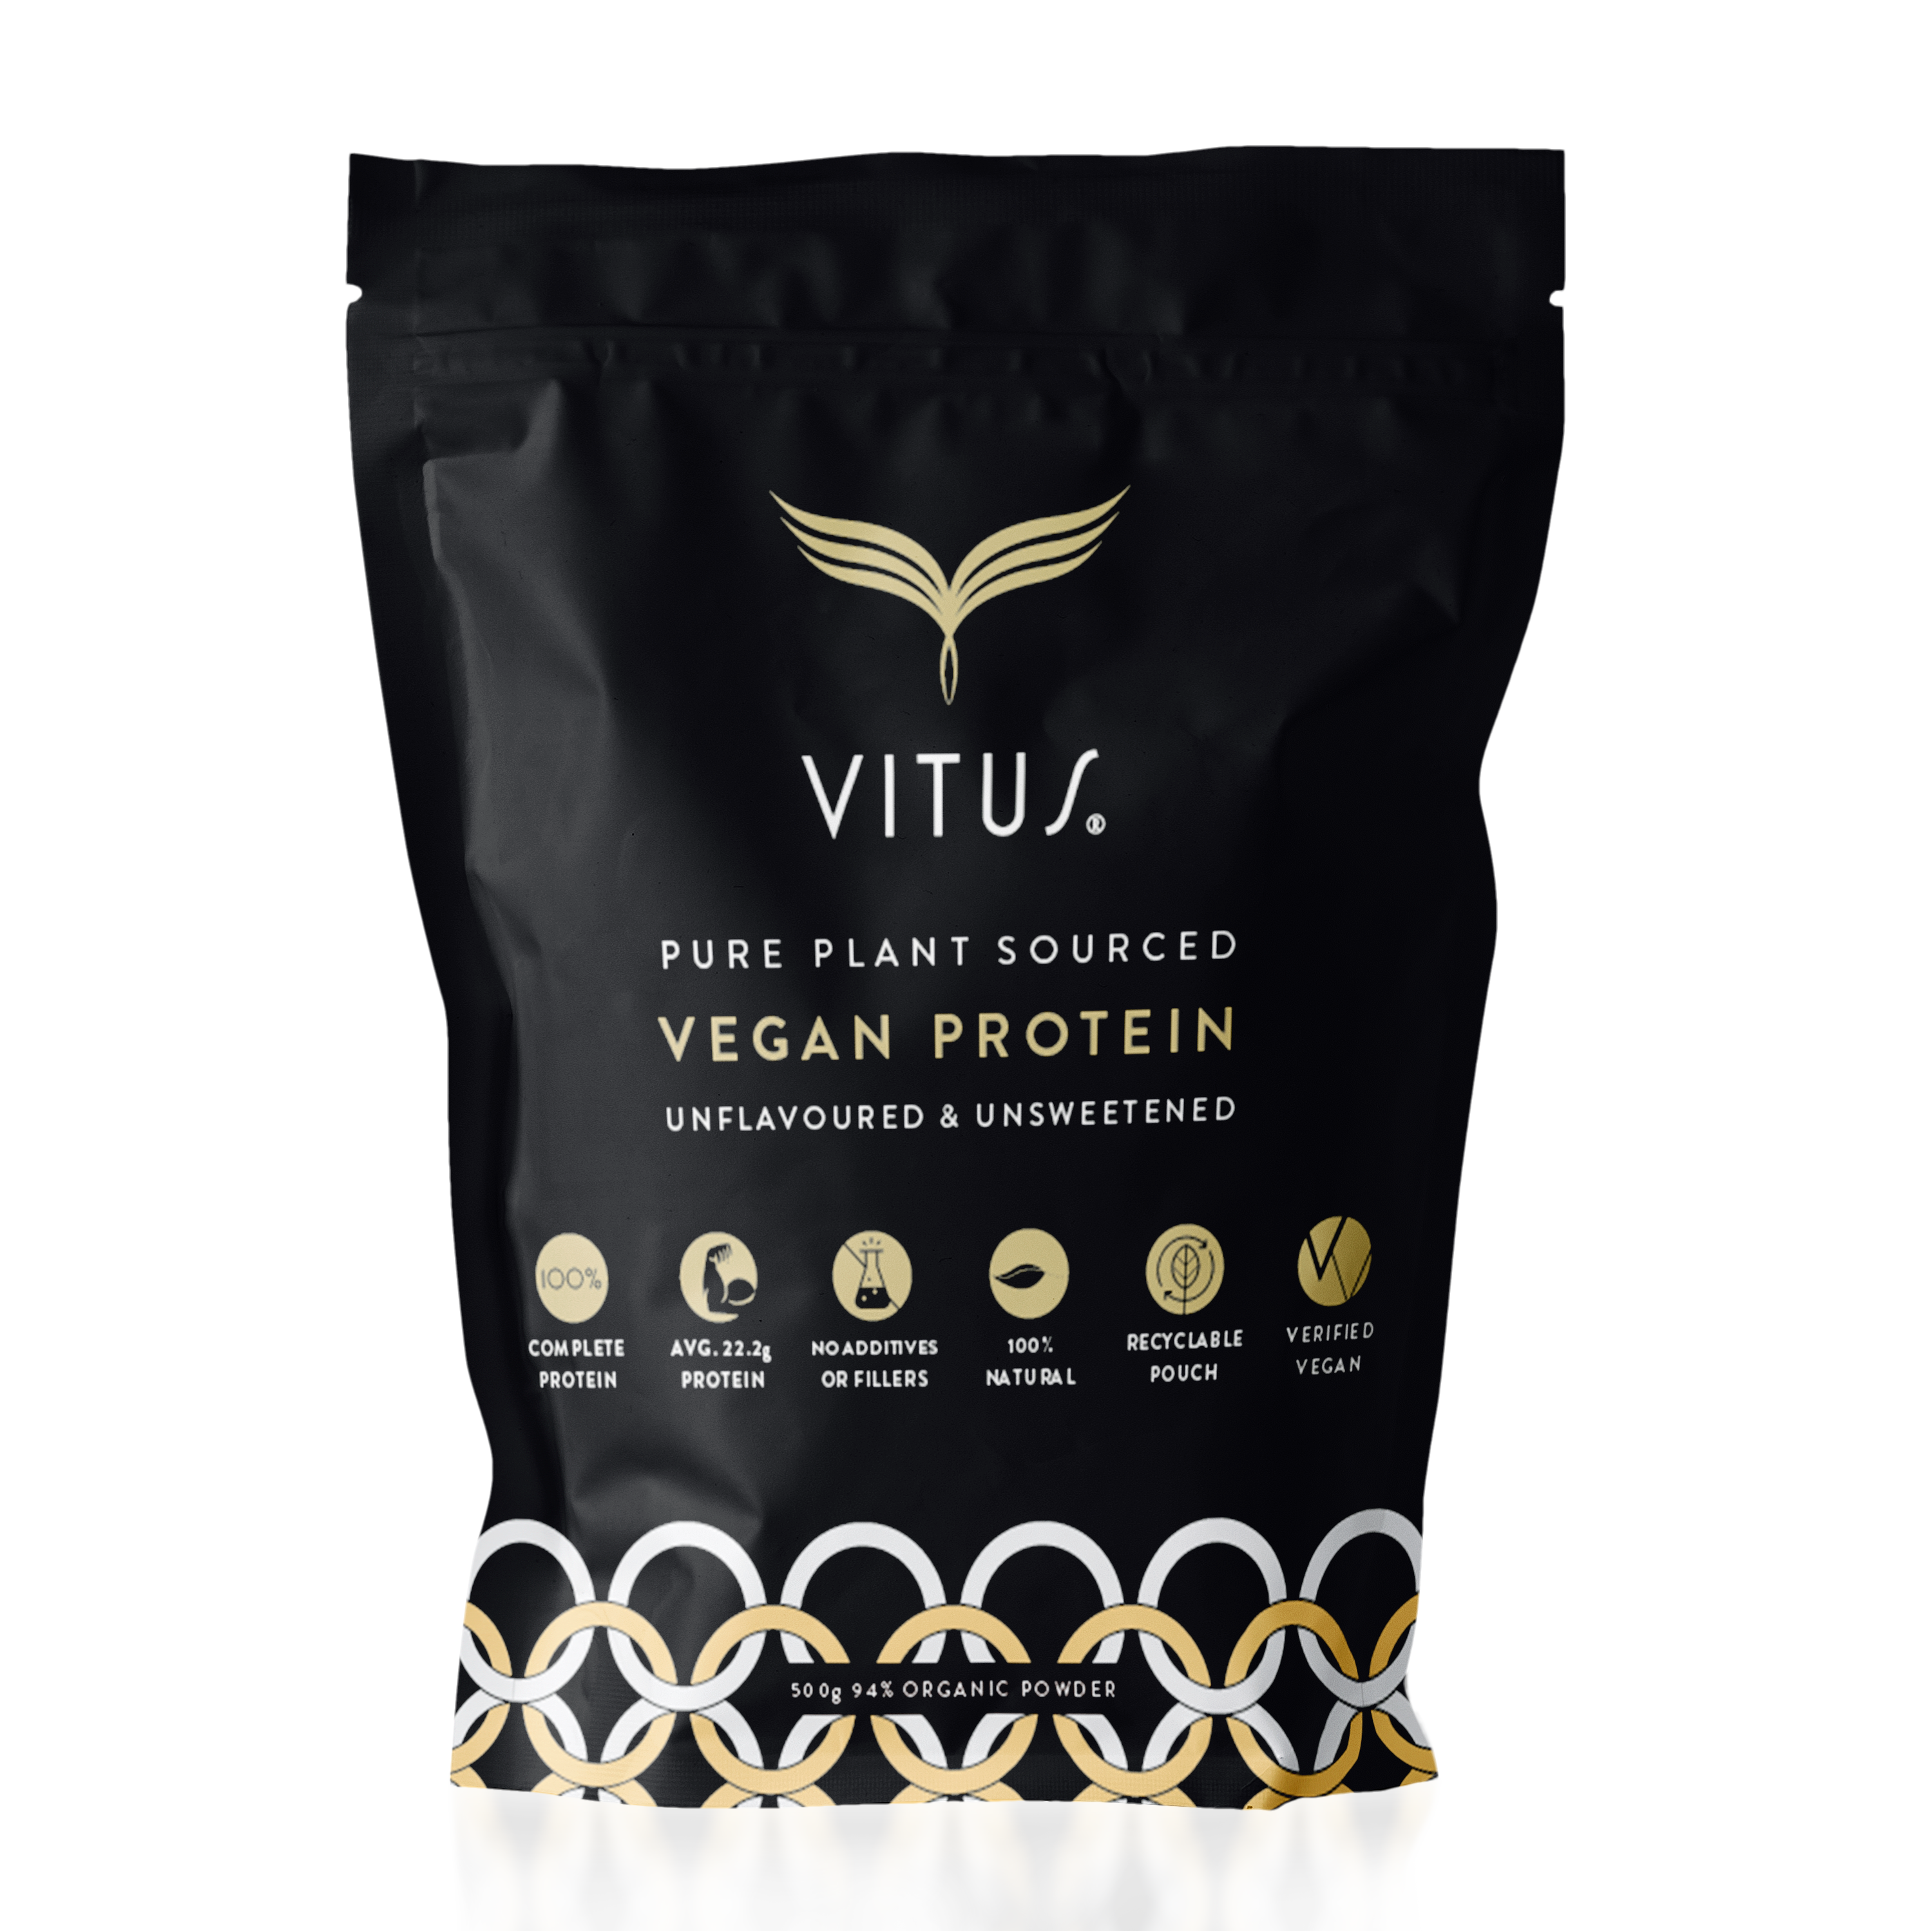 VITUS Vegan Protein